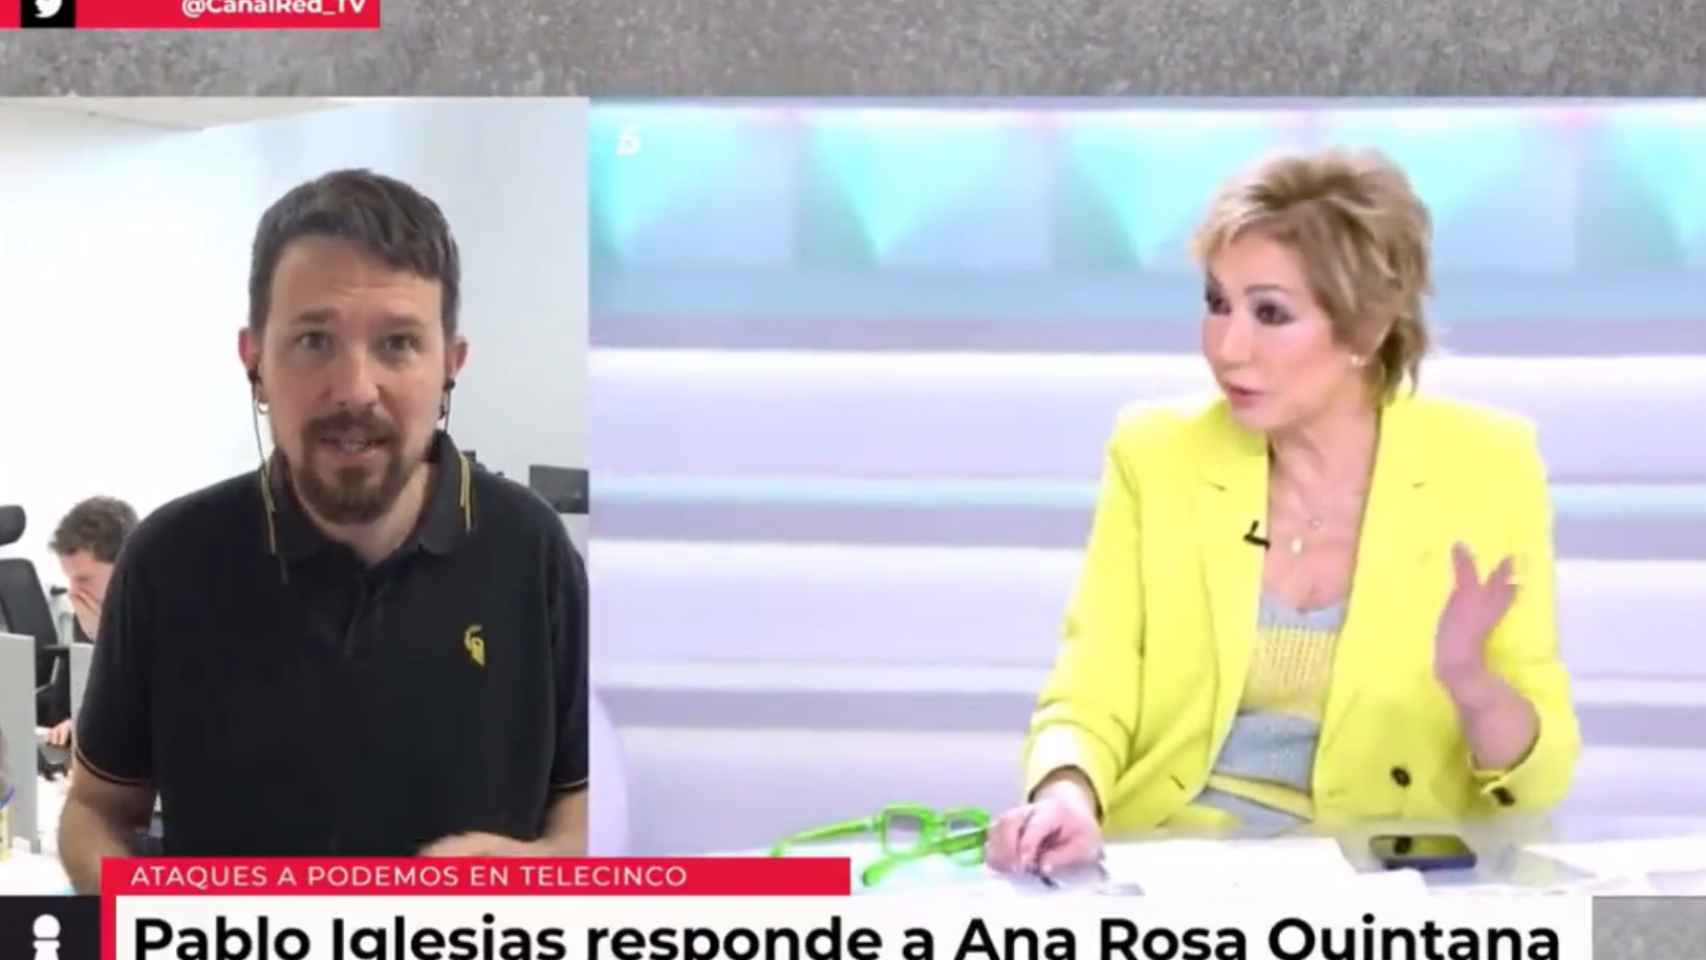 Pablo Iglesias arremete contra Ana Rosa: No sé si lo has pensado tú o te lo han escrito, como los libros